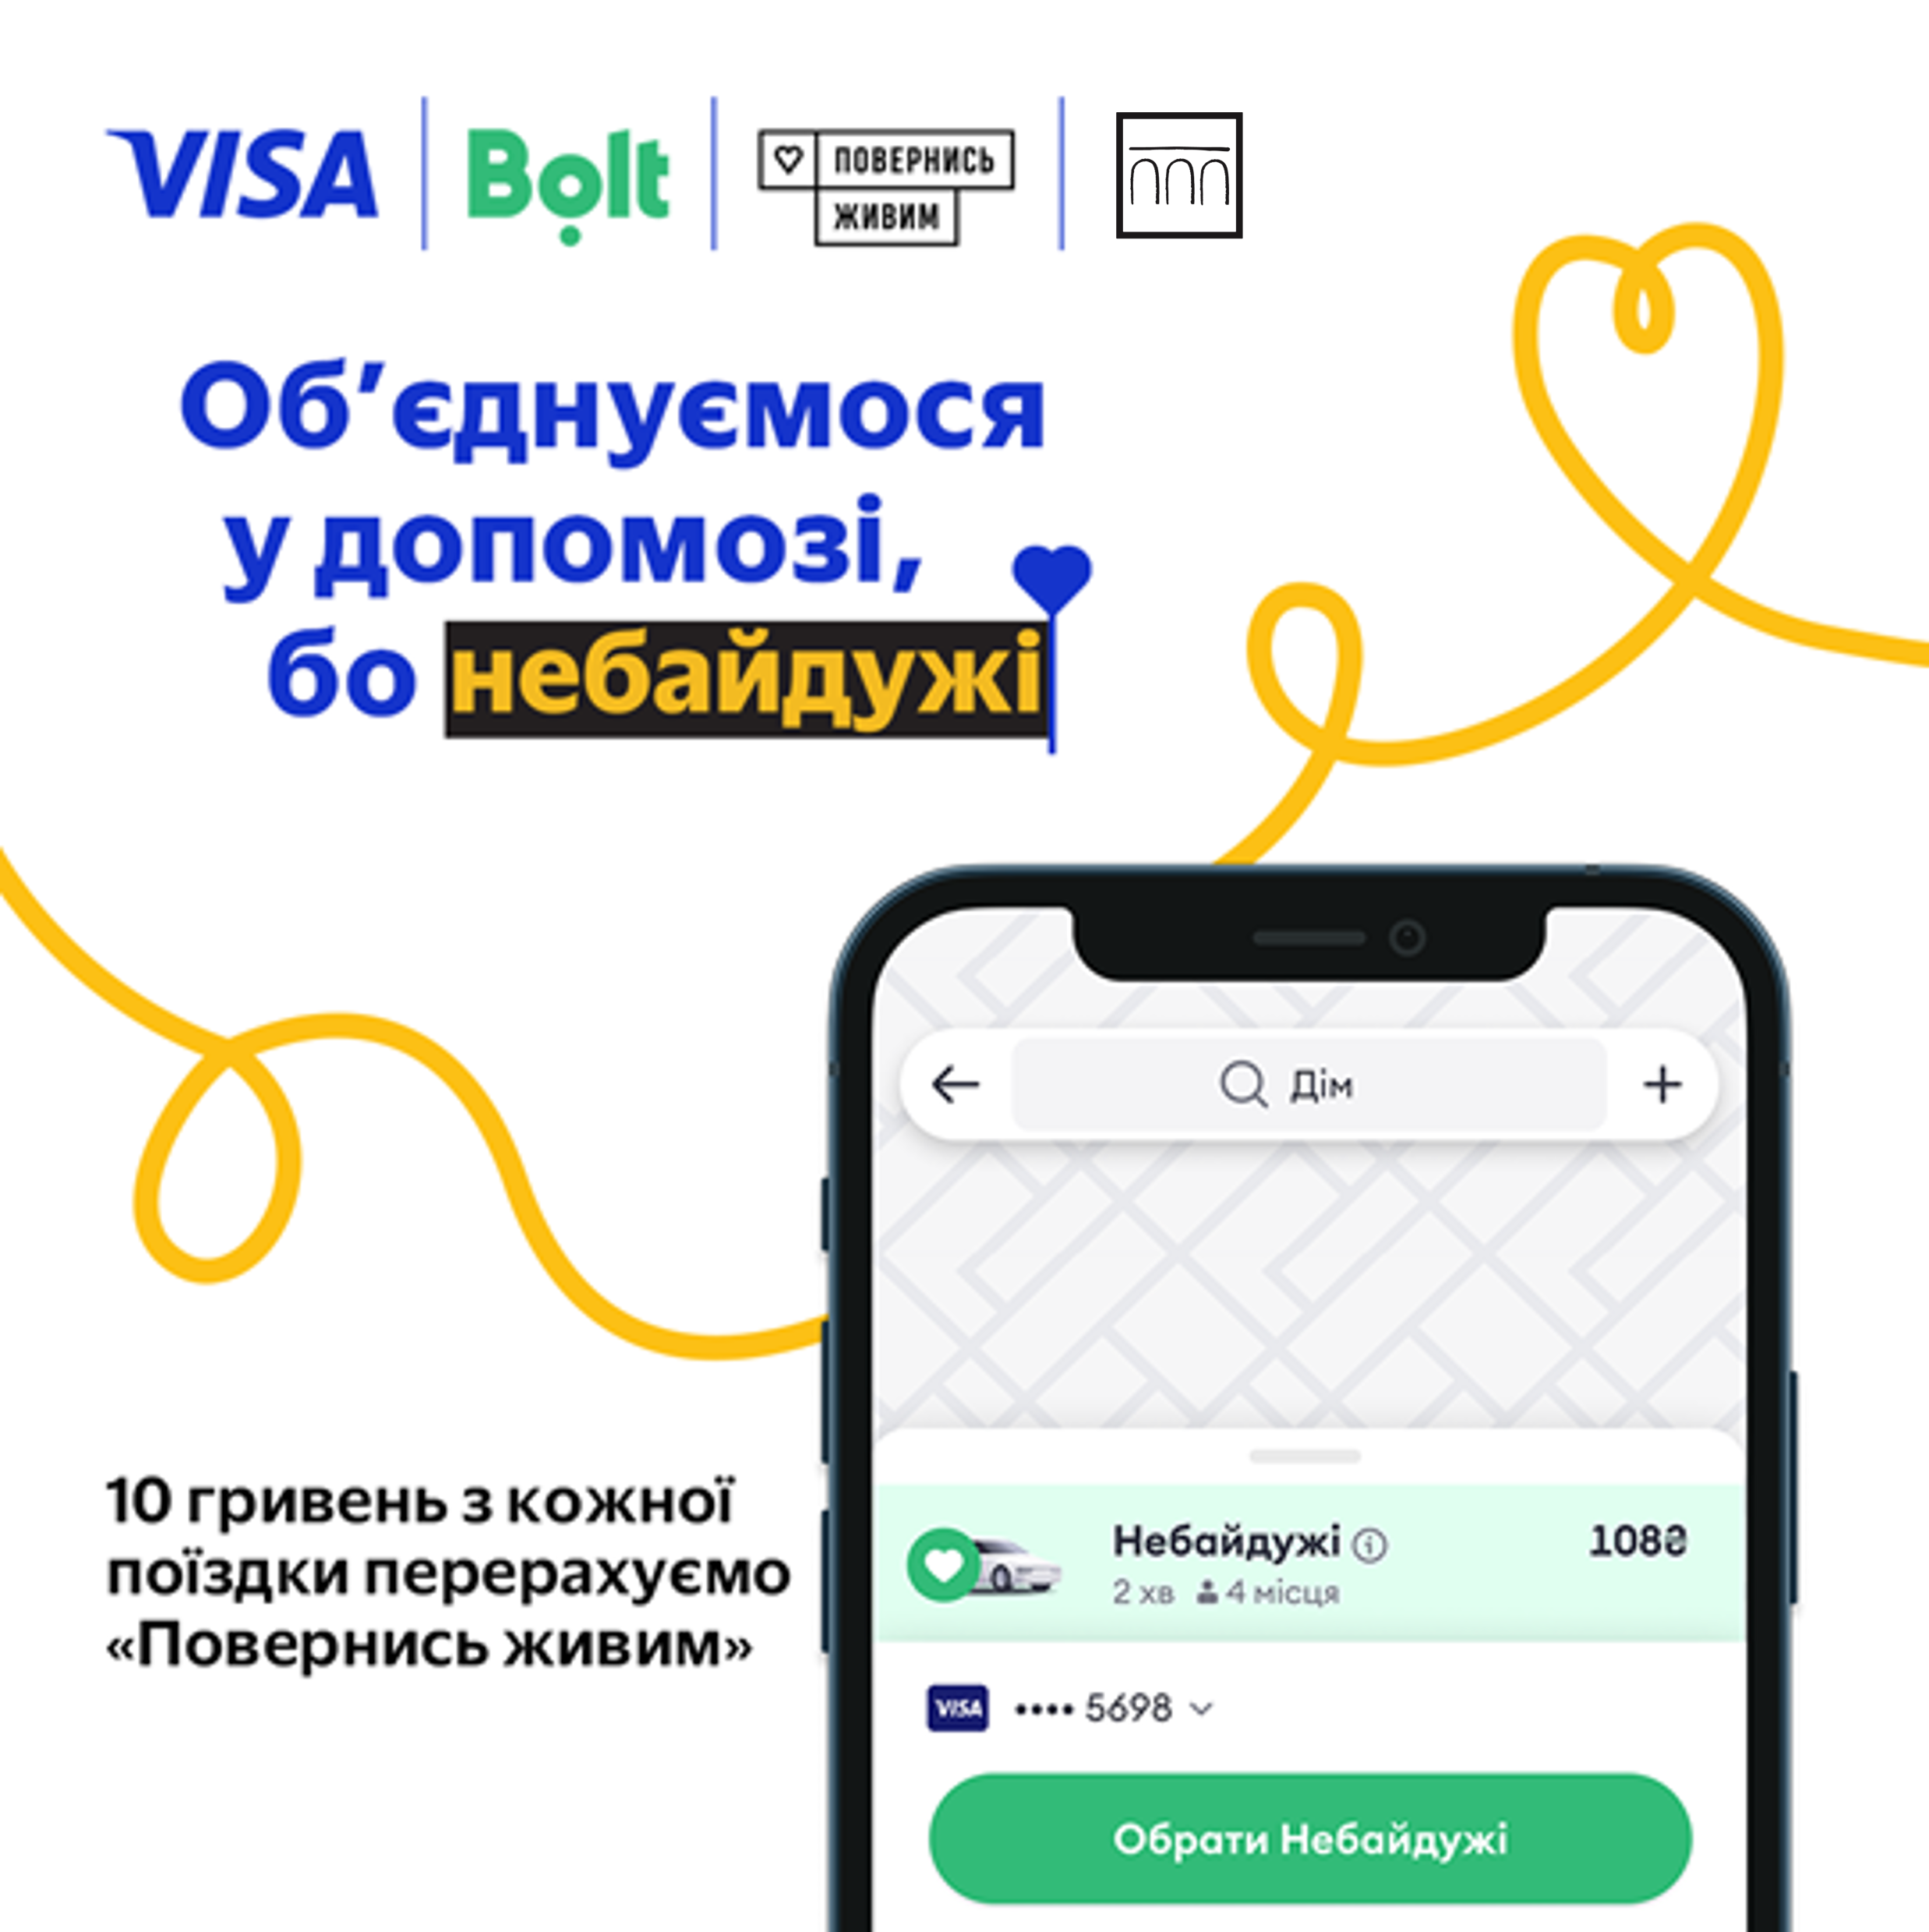 Долучайтеся до збору 1 000 000 грн у категорії «Небайдужі» у Bolt з Visa